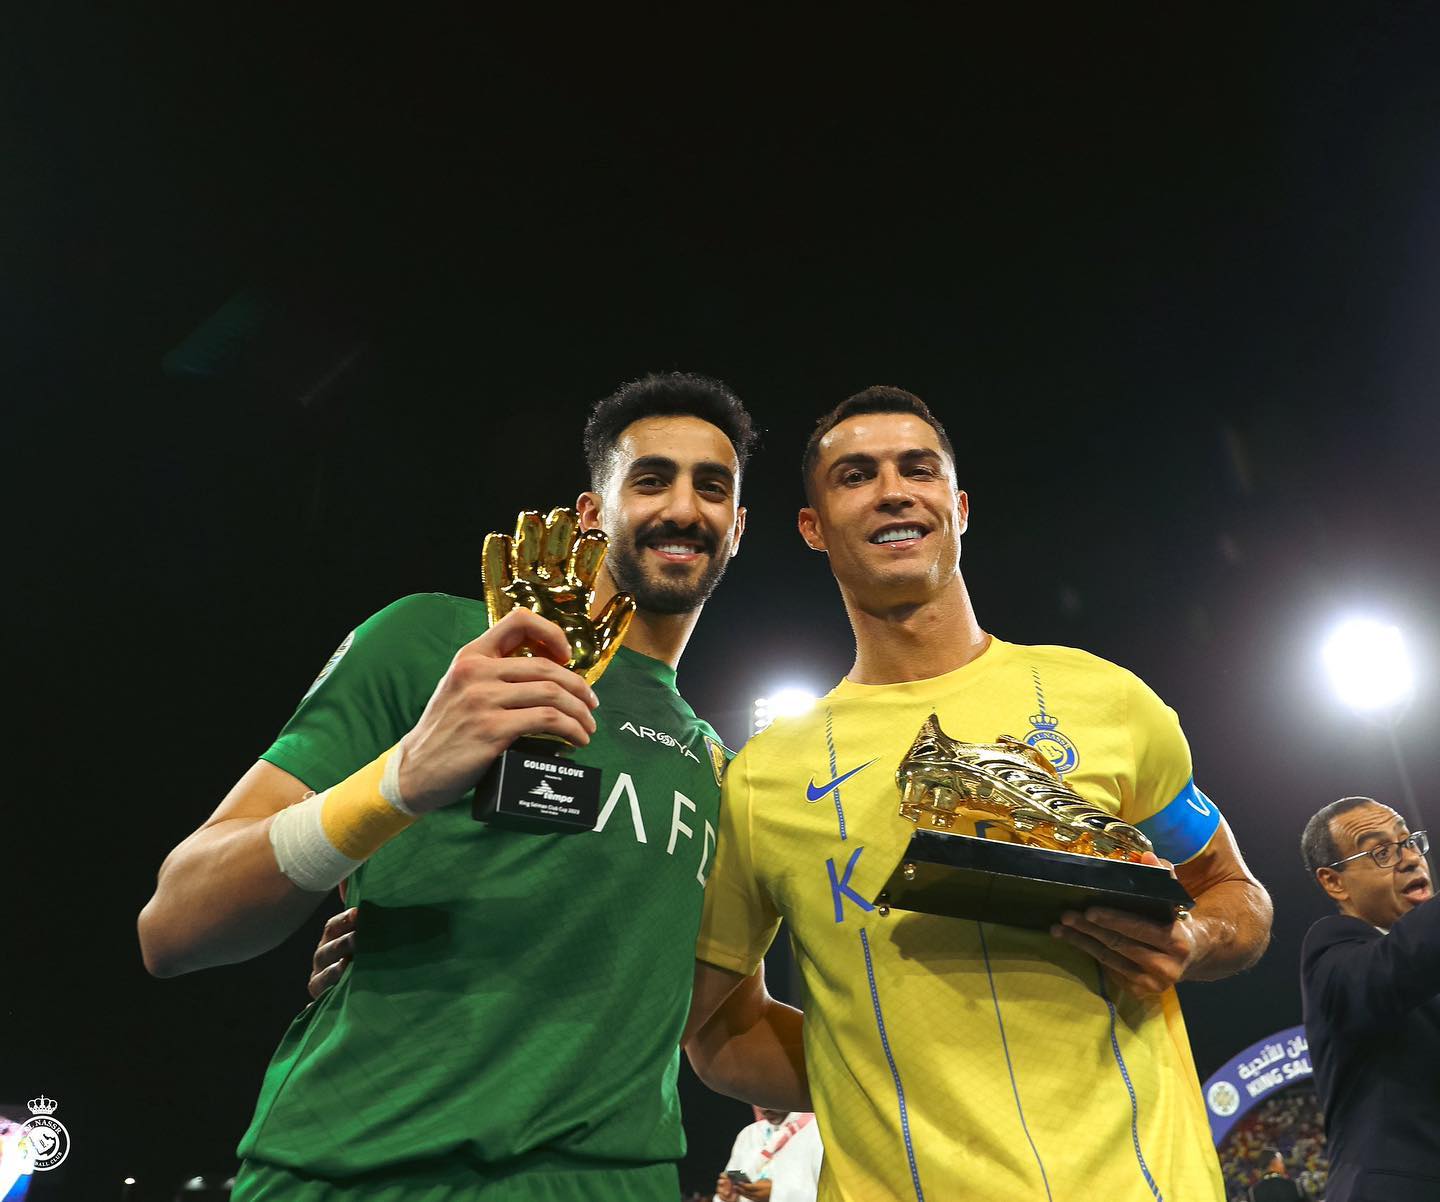 Ronaldo giành giải Chiếc giày vàng với 6 bàn thắng. Ảnh: Al-Nassr